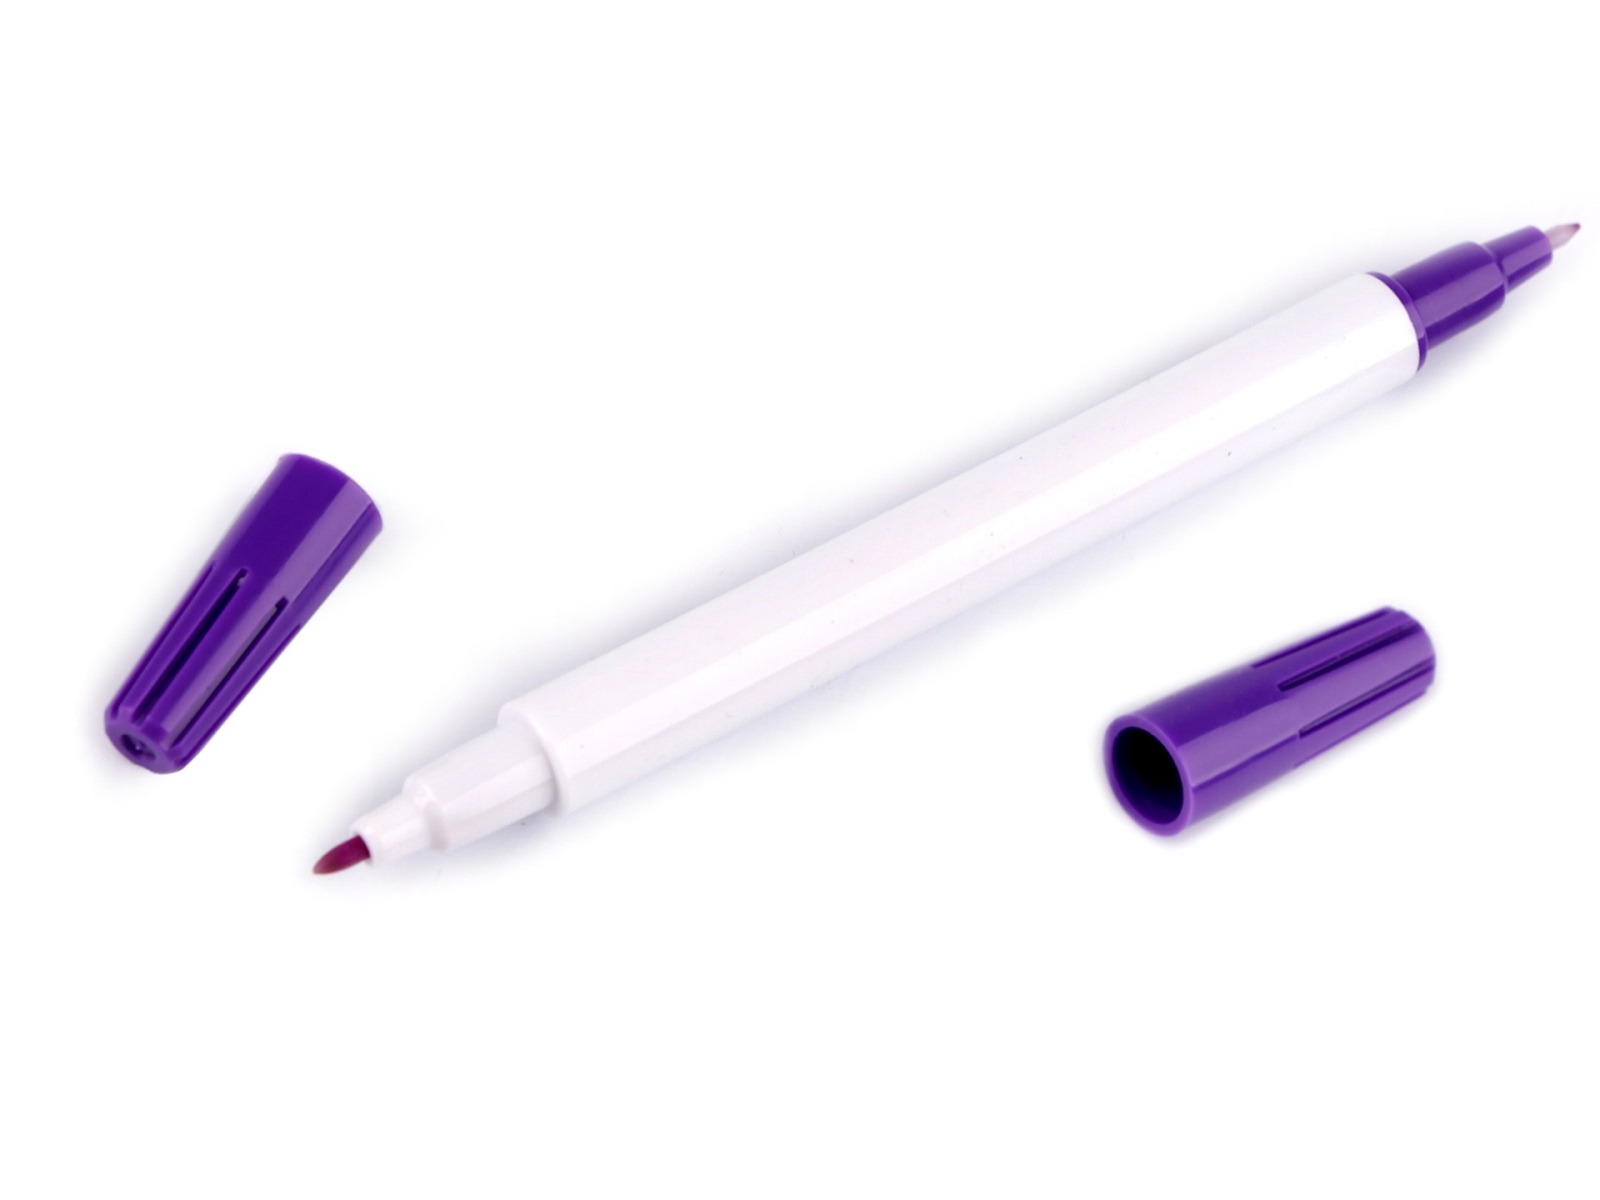 Markierstift Sew Mate lila - selbstlöschend mit Doppelspitze 3